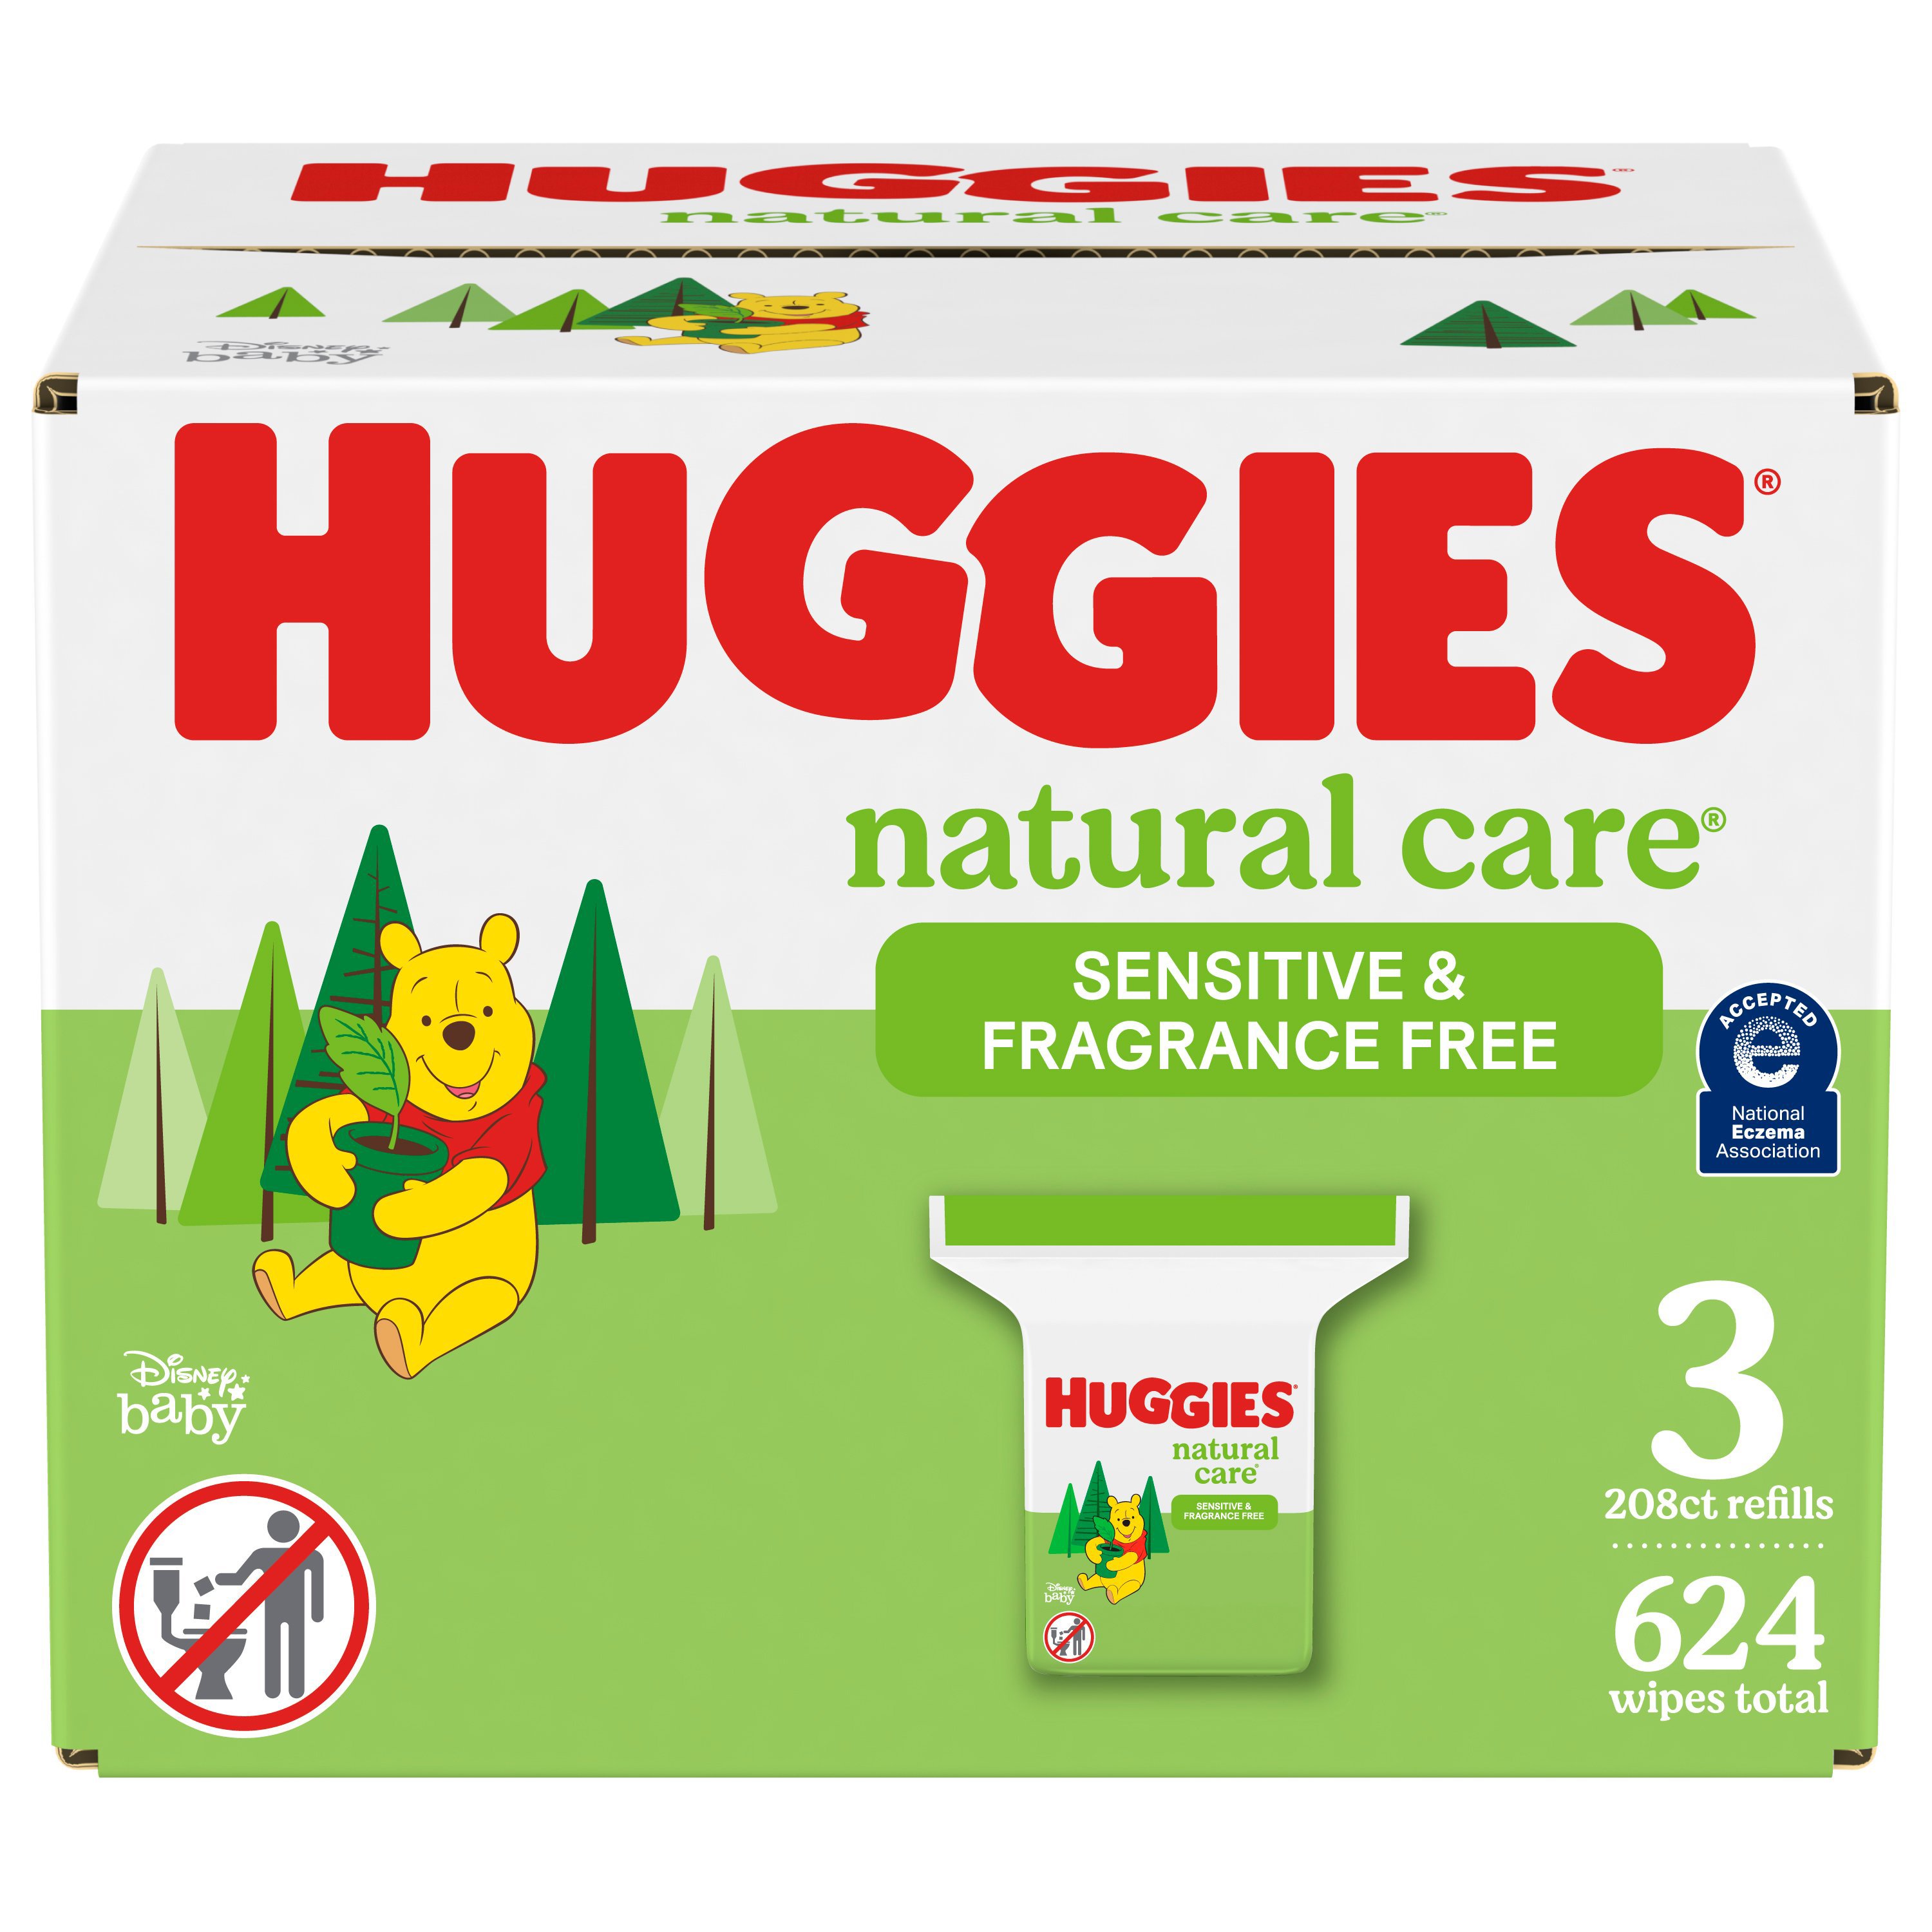 huggies wipes refill box